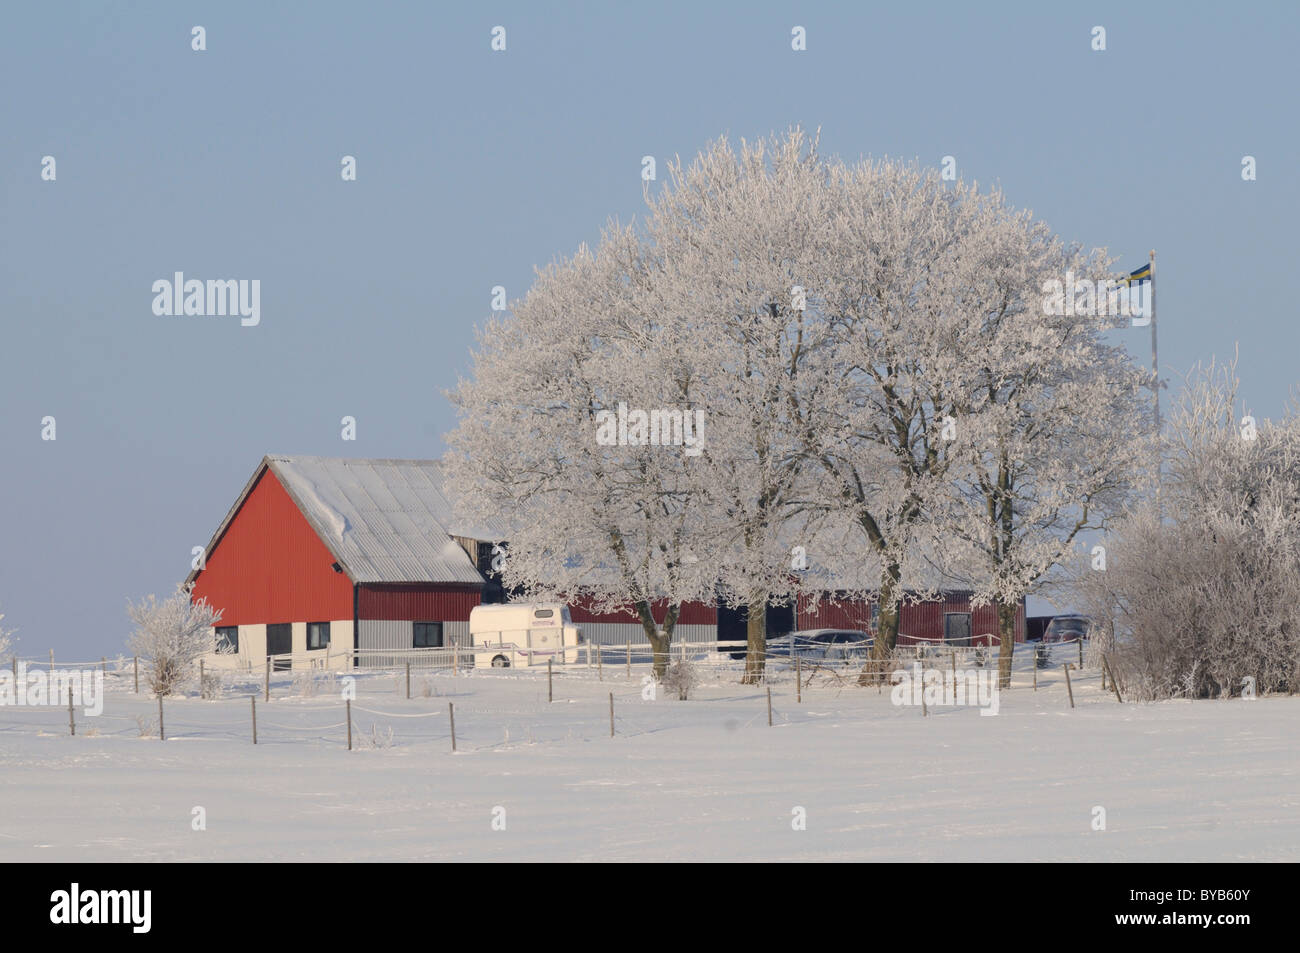 Farm in winter landscape, Skåne, Sweden, Europe Stock Photo